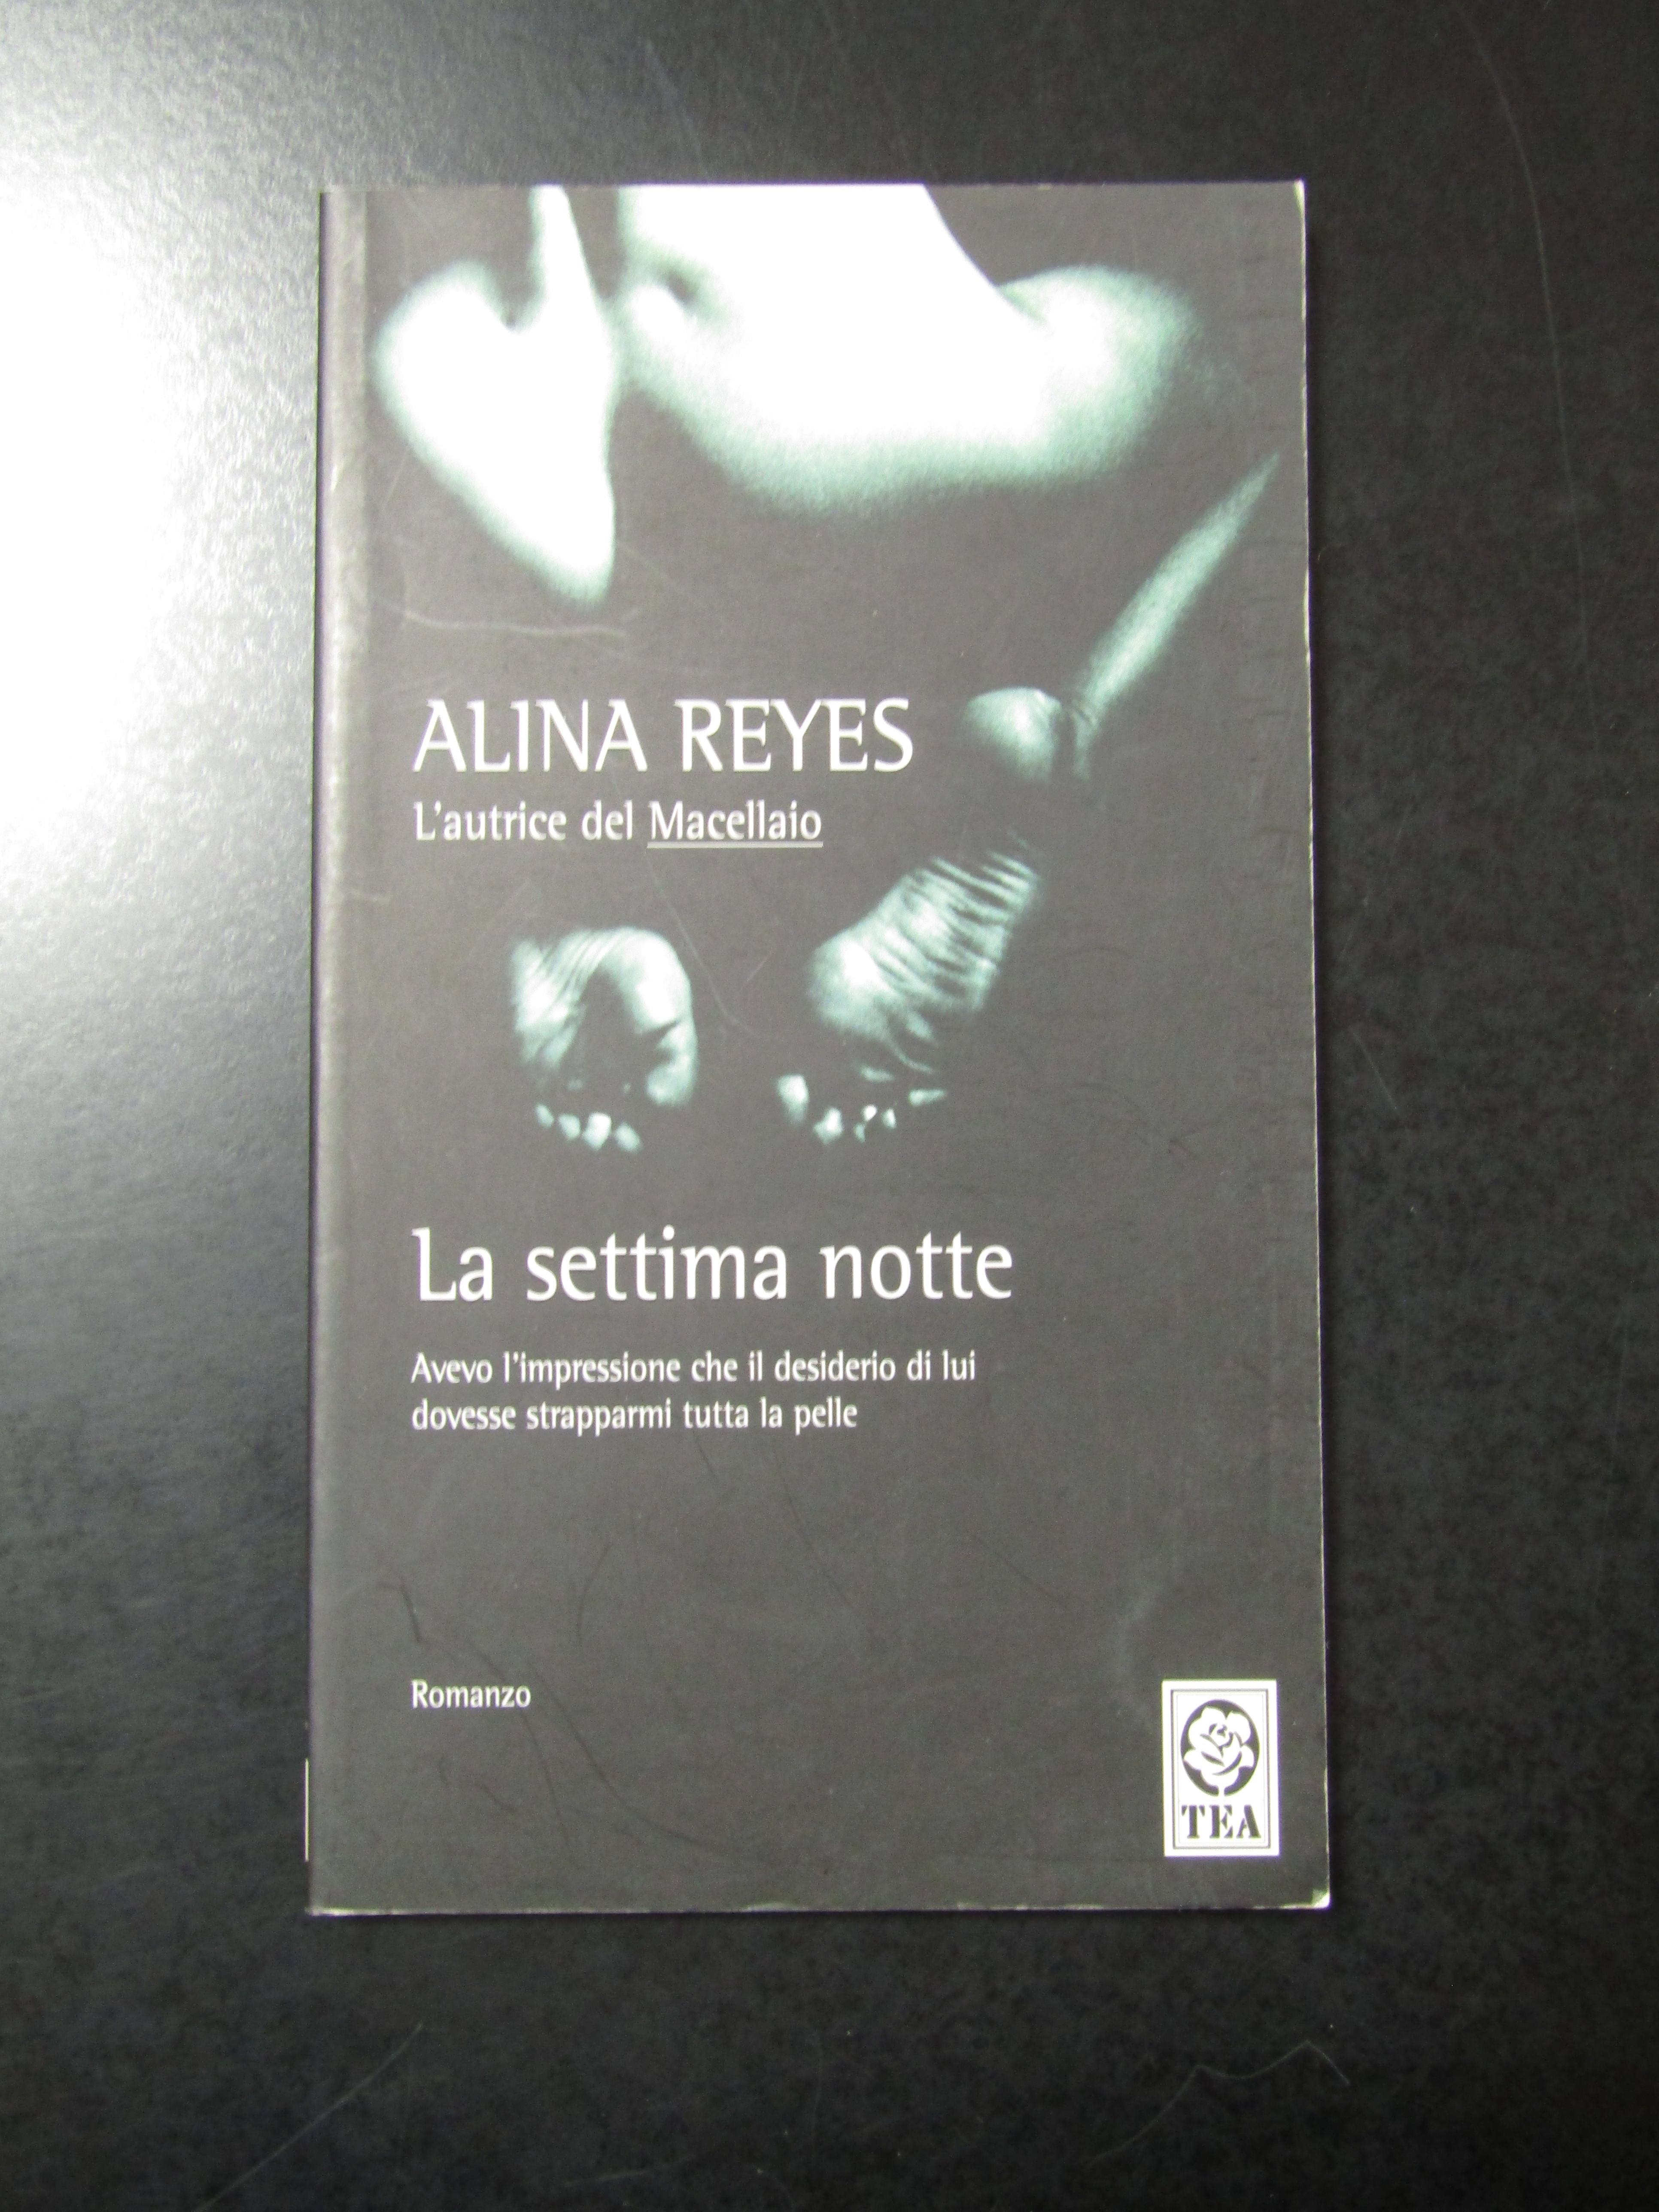 Reyes Alina. La settima notte. TEA 2006.